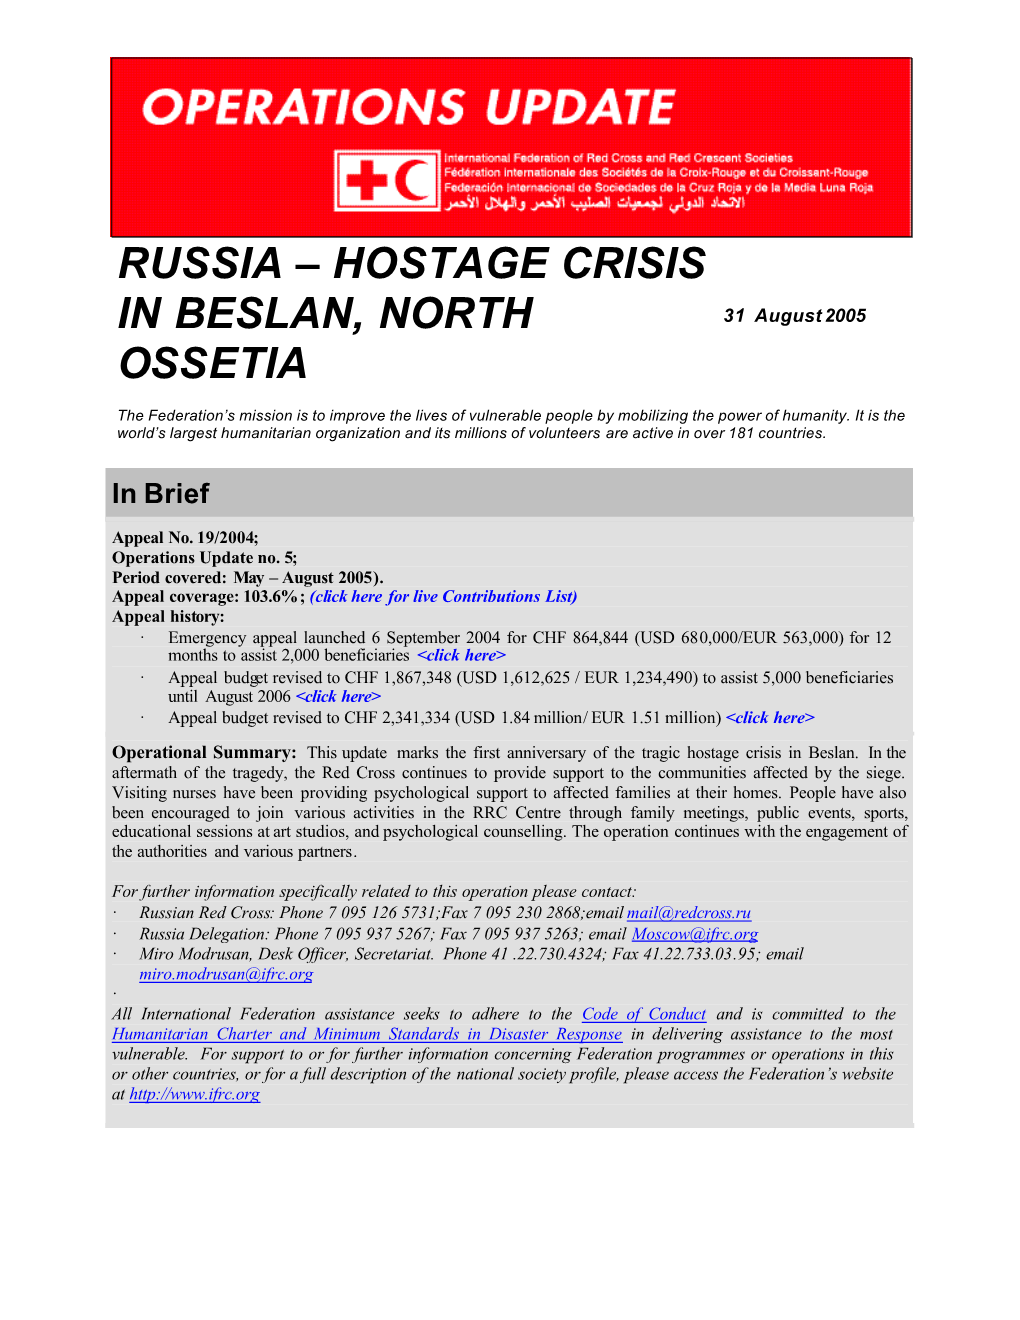 Hostage Crisis in Beslan, North Ossetia